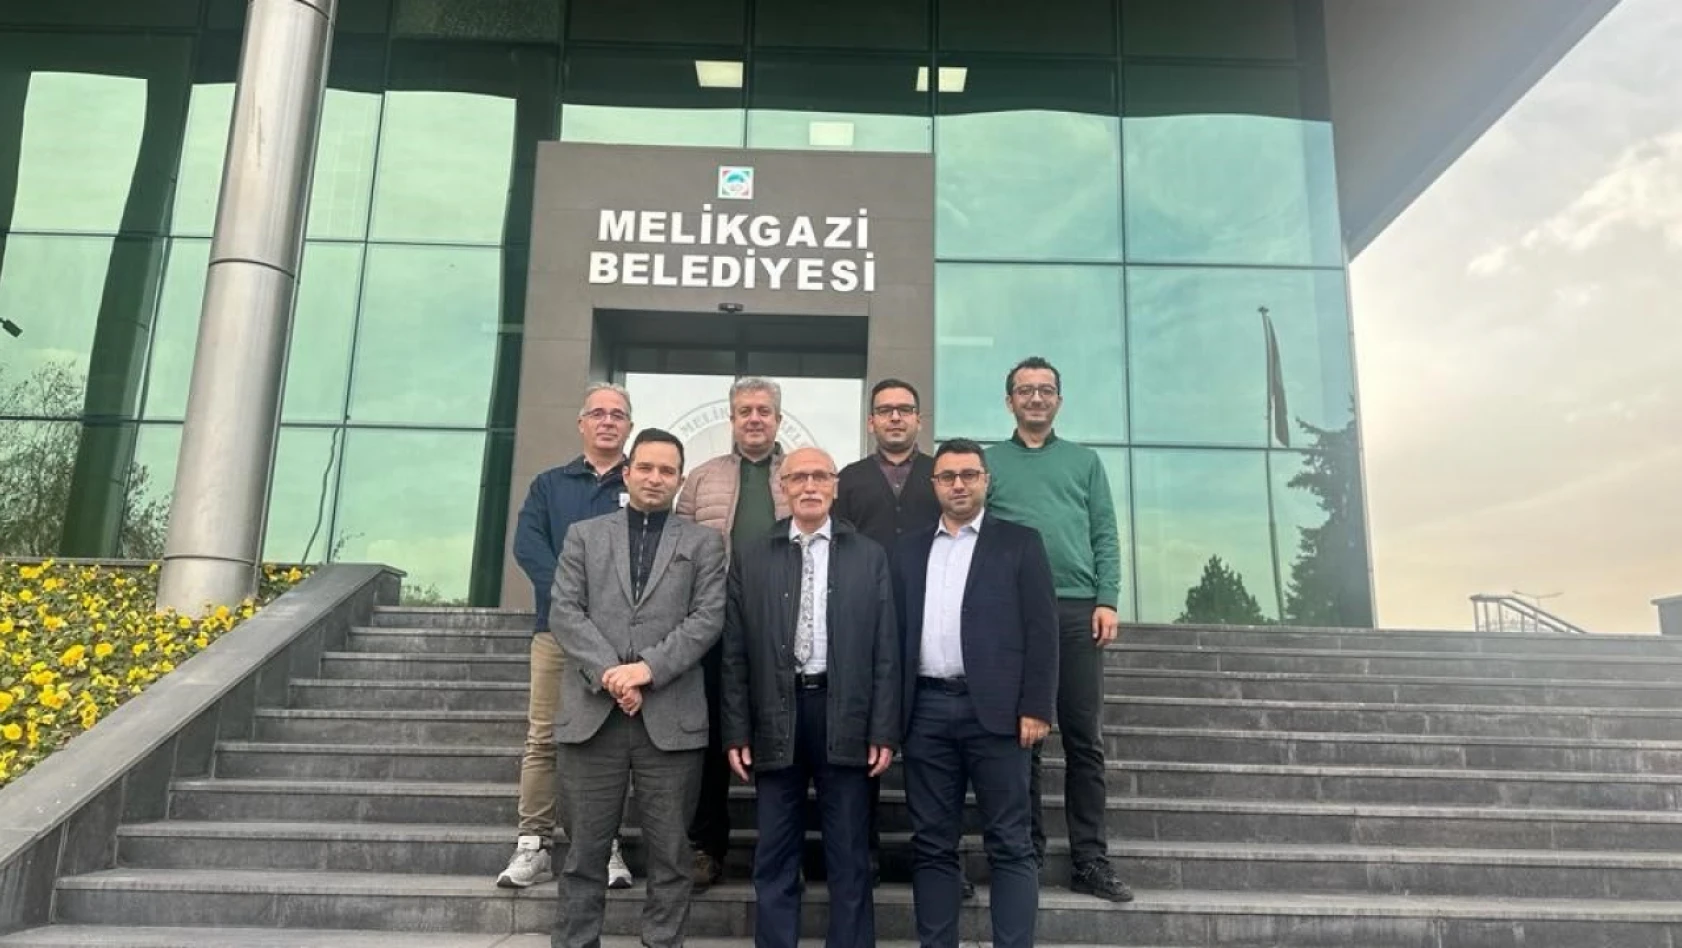 Kayseri'de bir ilk! - Melikgazi Belediyesi Enerji yönetim sistemi sertifikasını alan ilk belediye oldu